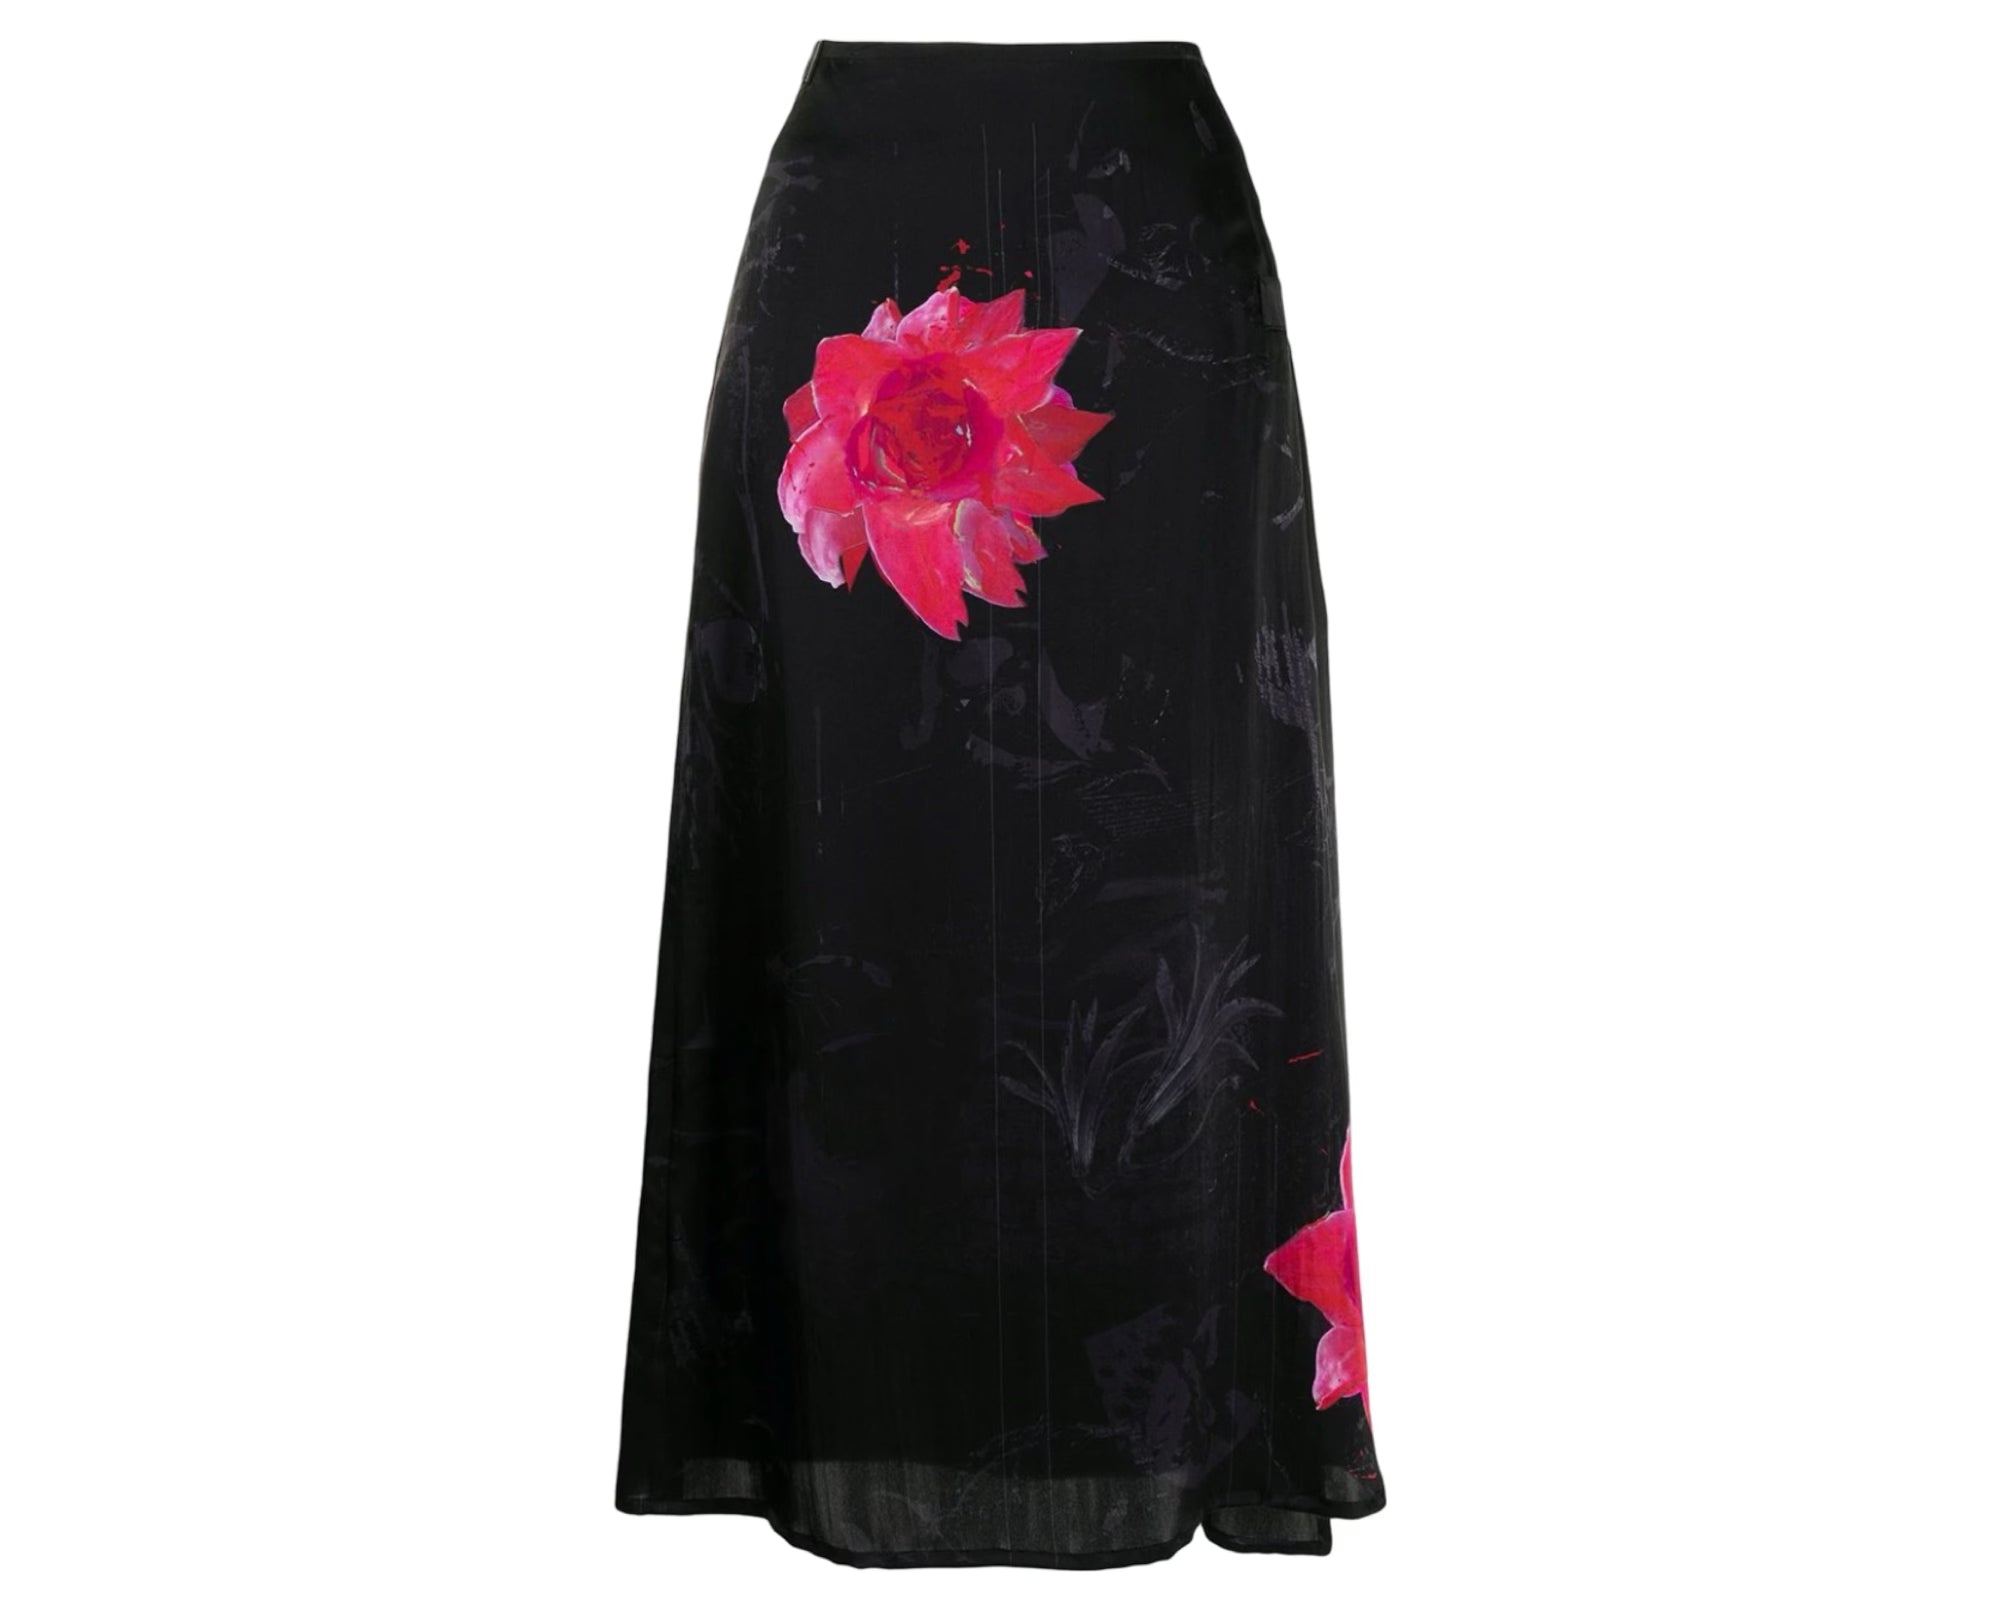 Yohji Yamamoto Women's Black and Red Skirt